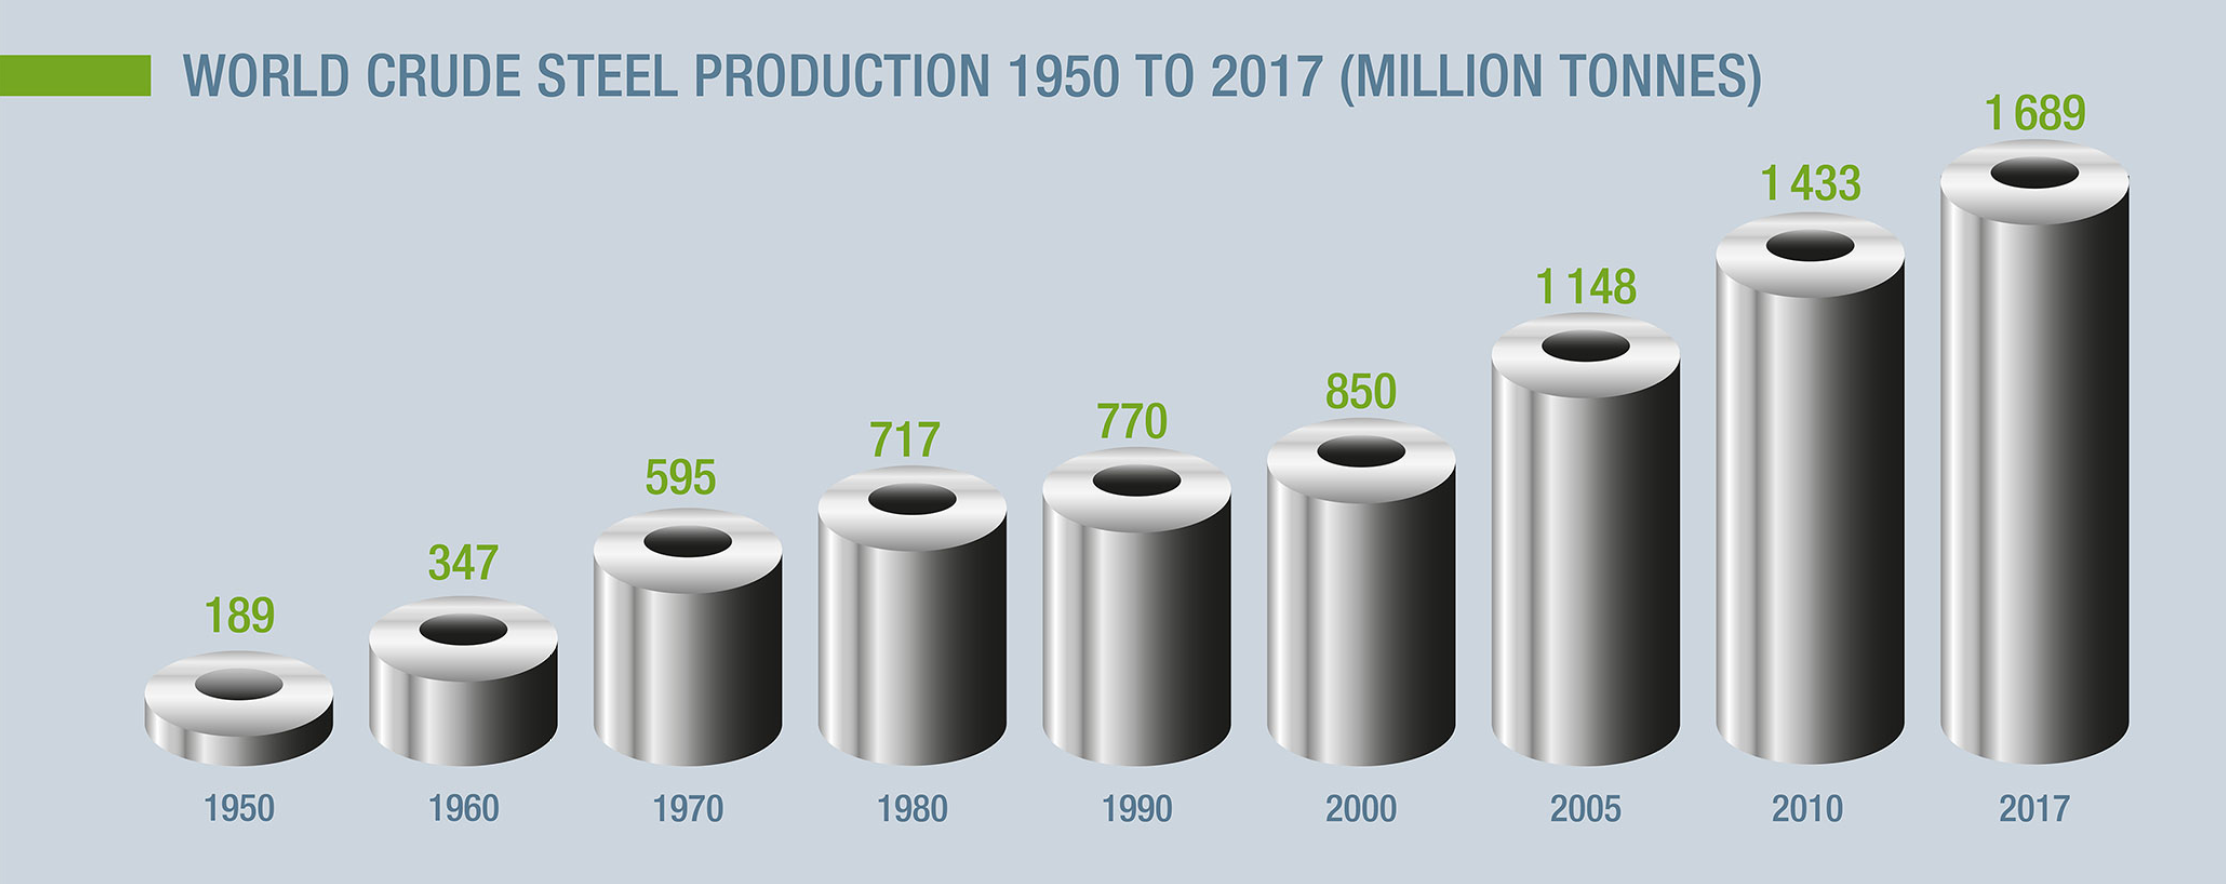 Evolution de la production d'acier brut de 1950 à 2017